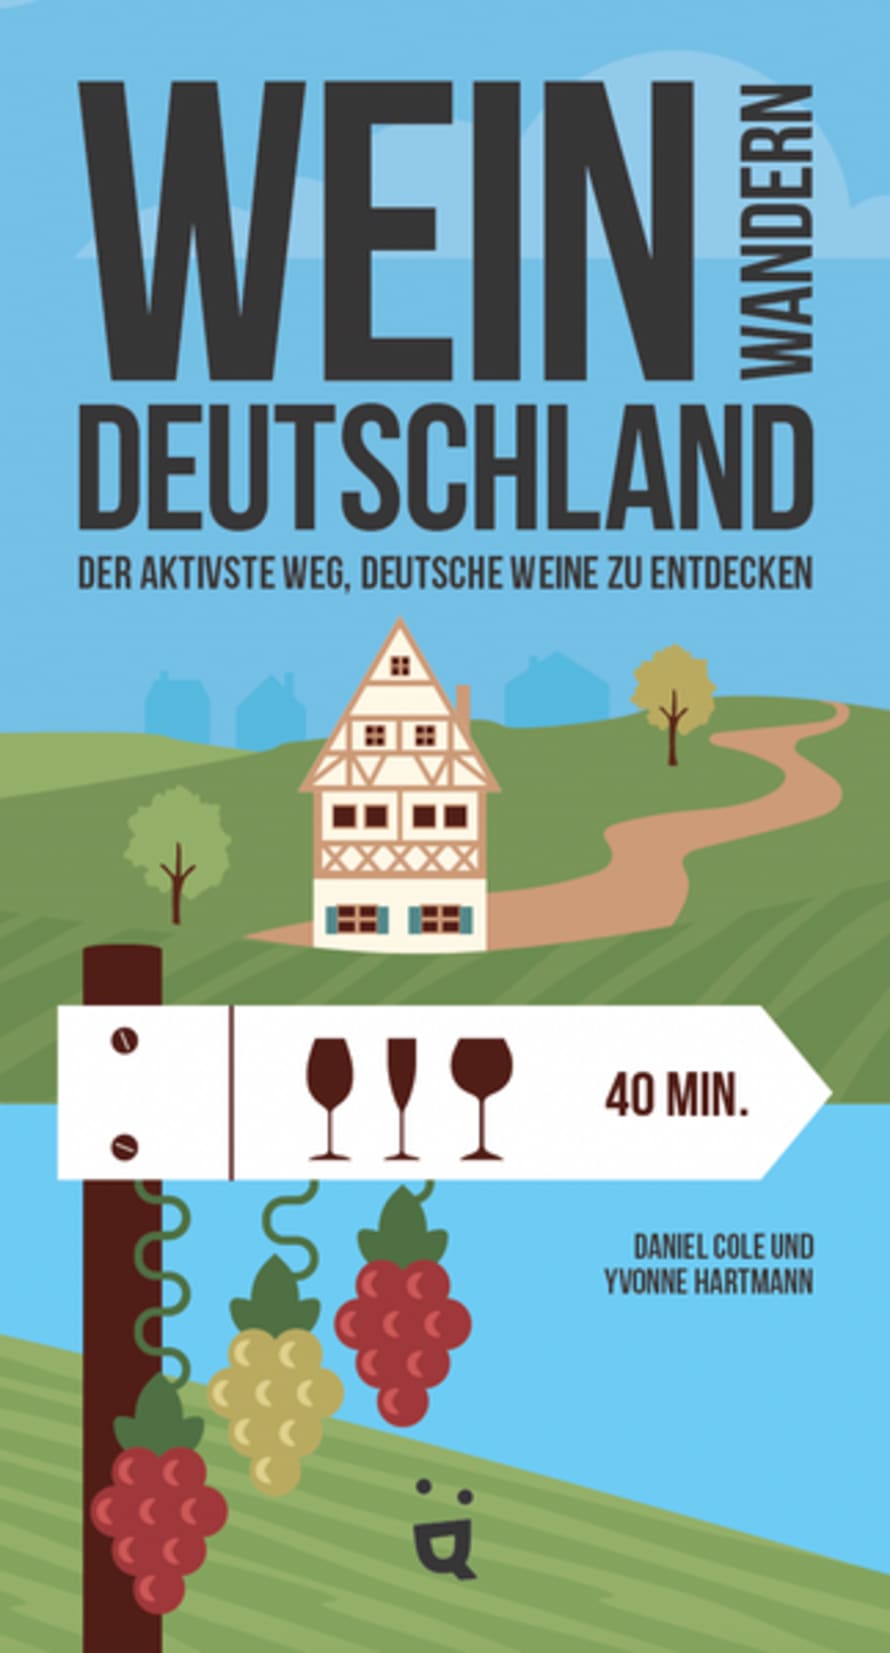 HELVETIQ Weinwandern Deutschland Game